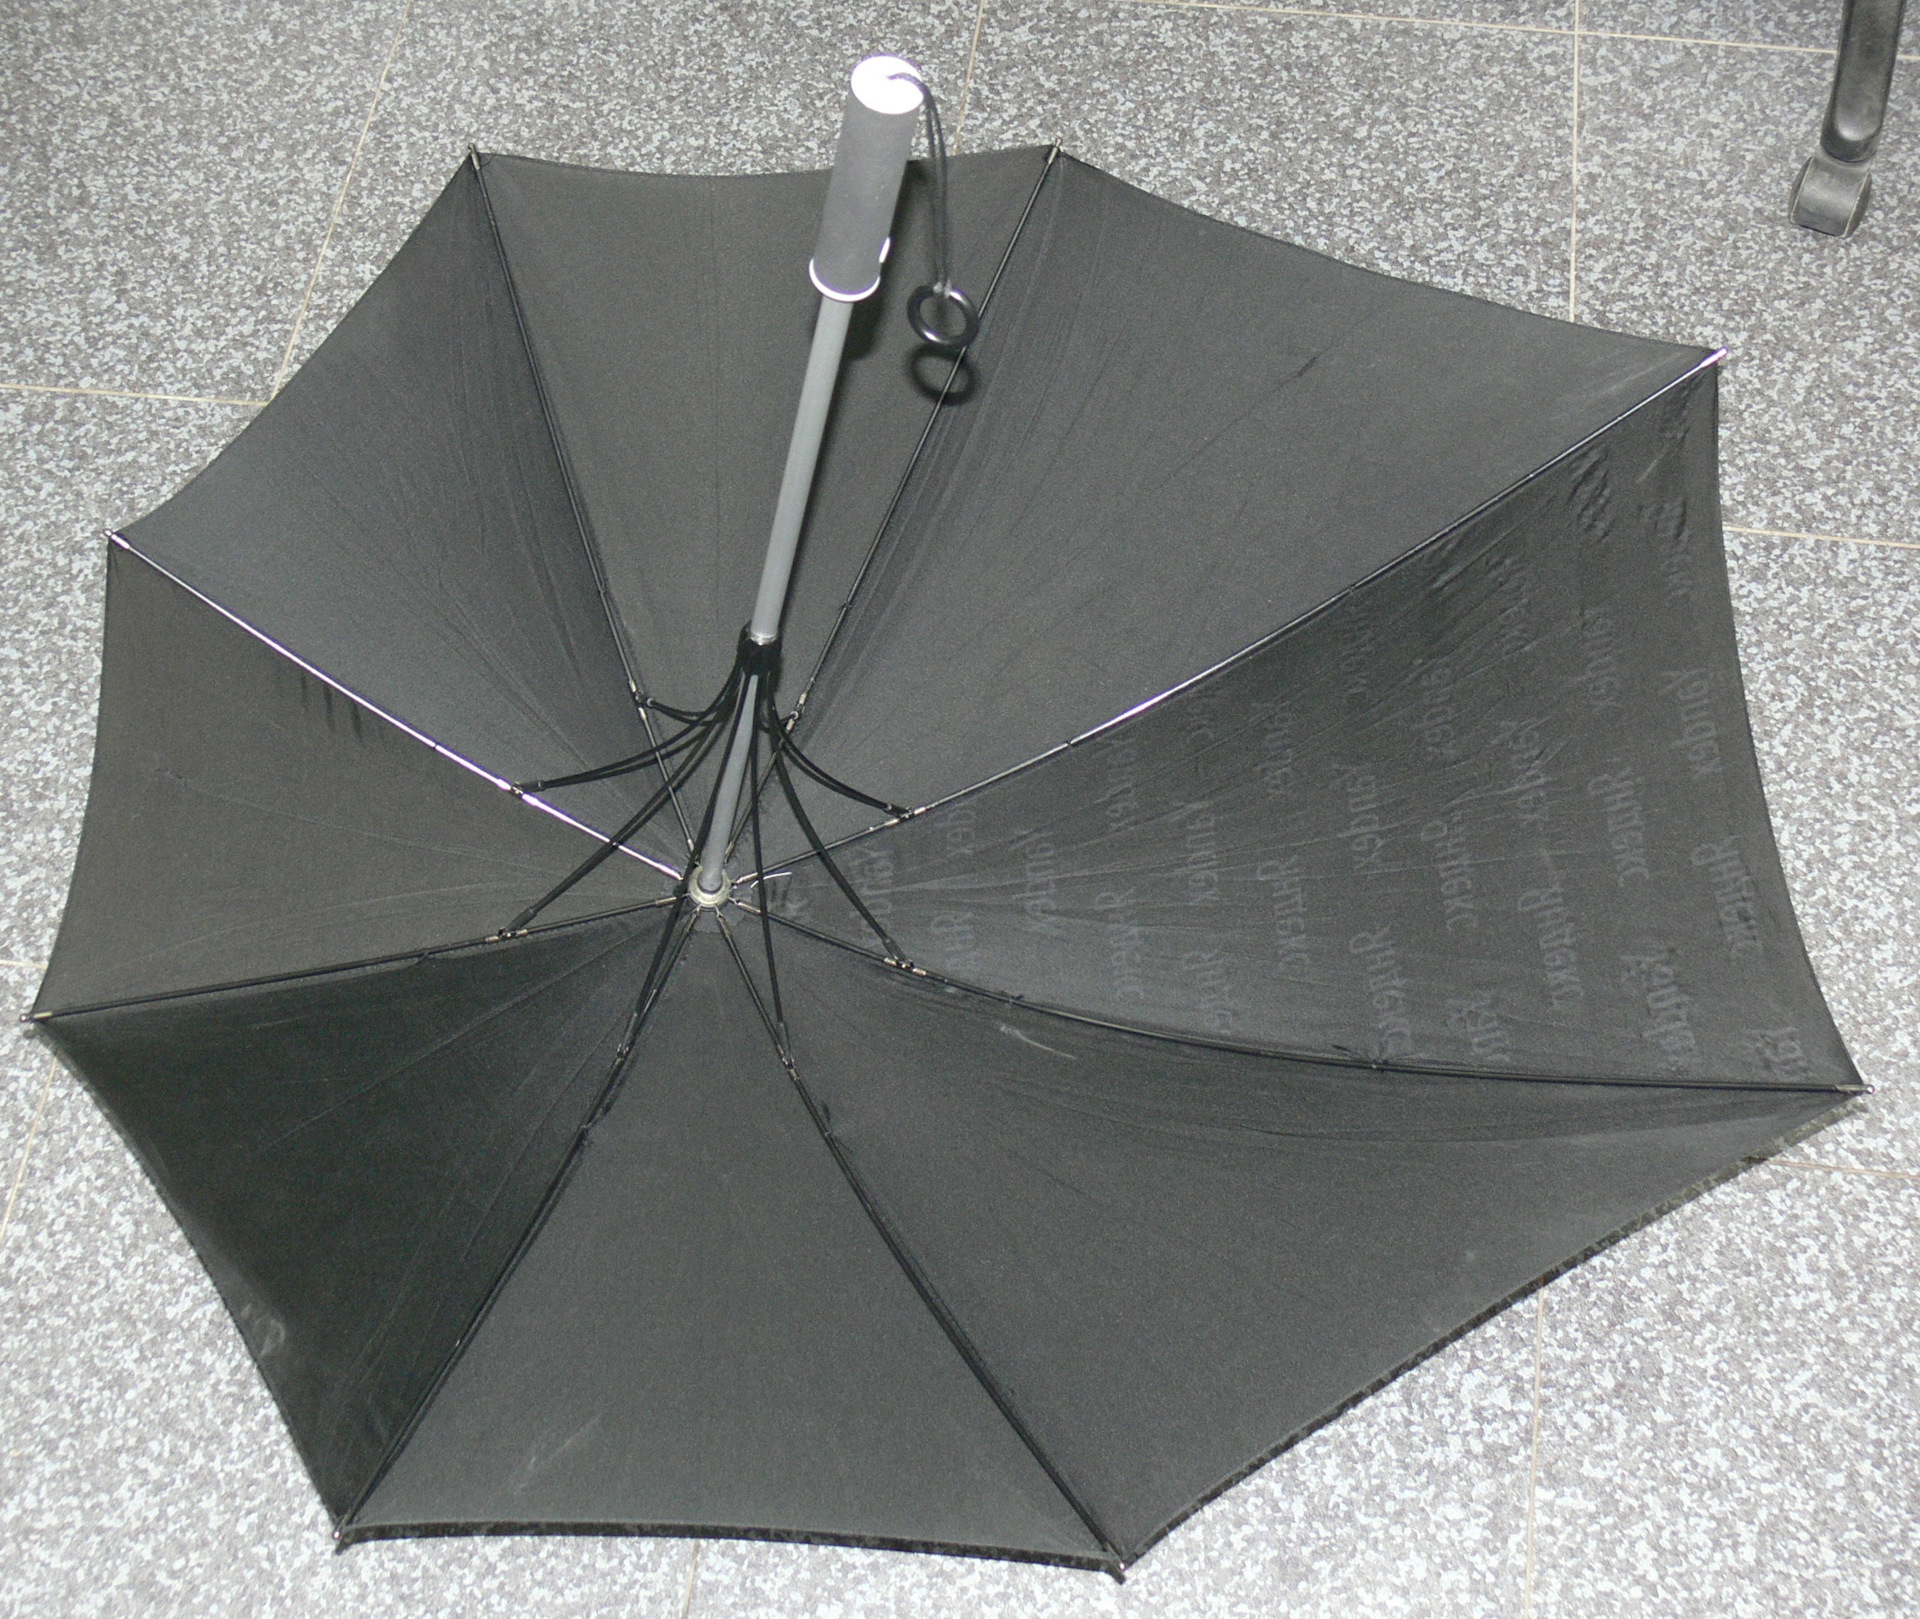 Ремонт зонтов в самаре. Отремонтировать зонтик. Спицы от зонта. Ремонт зонта. Зонтик на манипулятор.